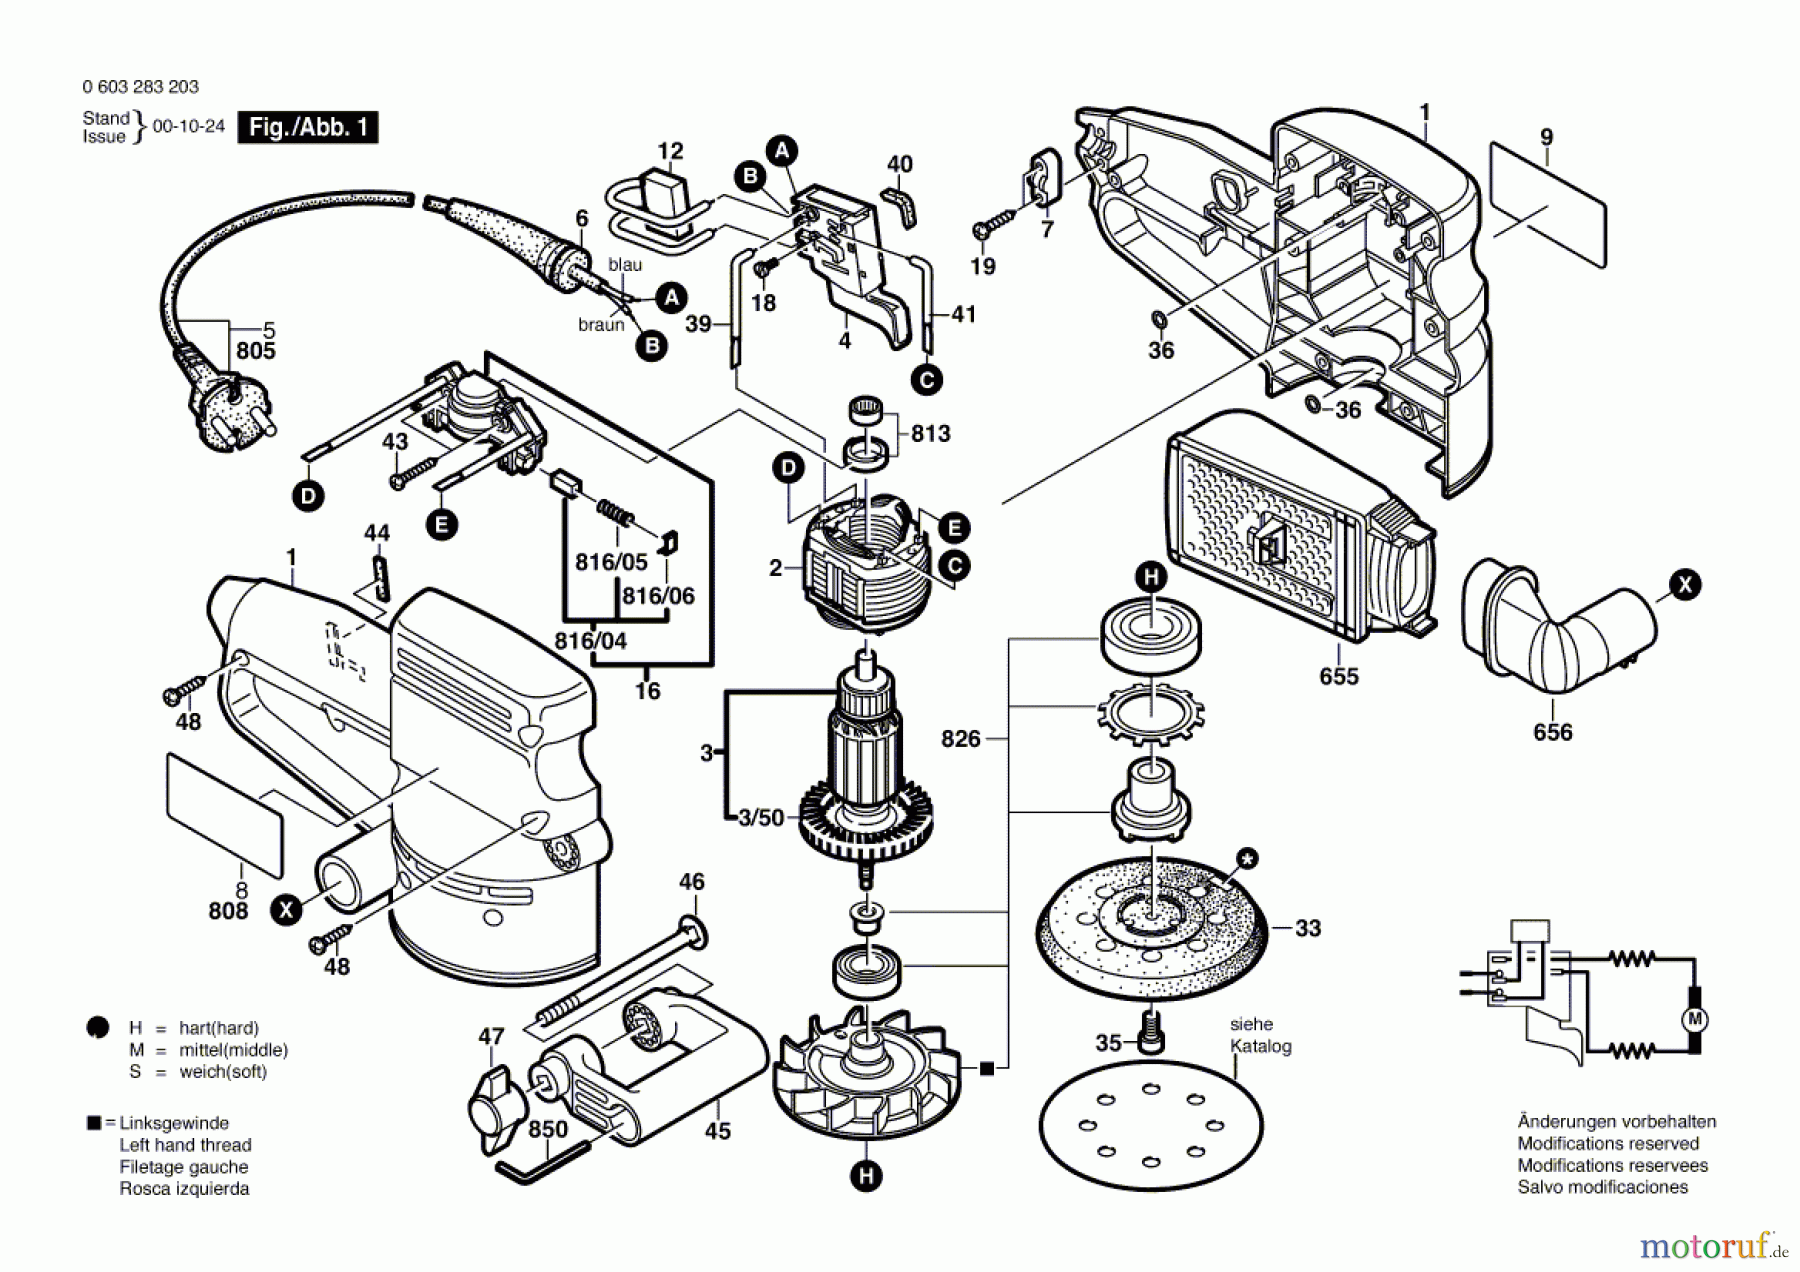  Bosch Werkzeug Exzenterschleifer PEX 125 A-1 Seite 1